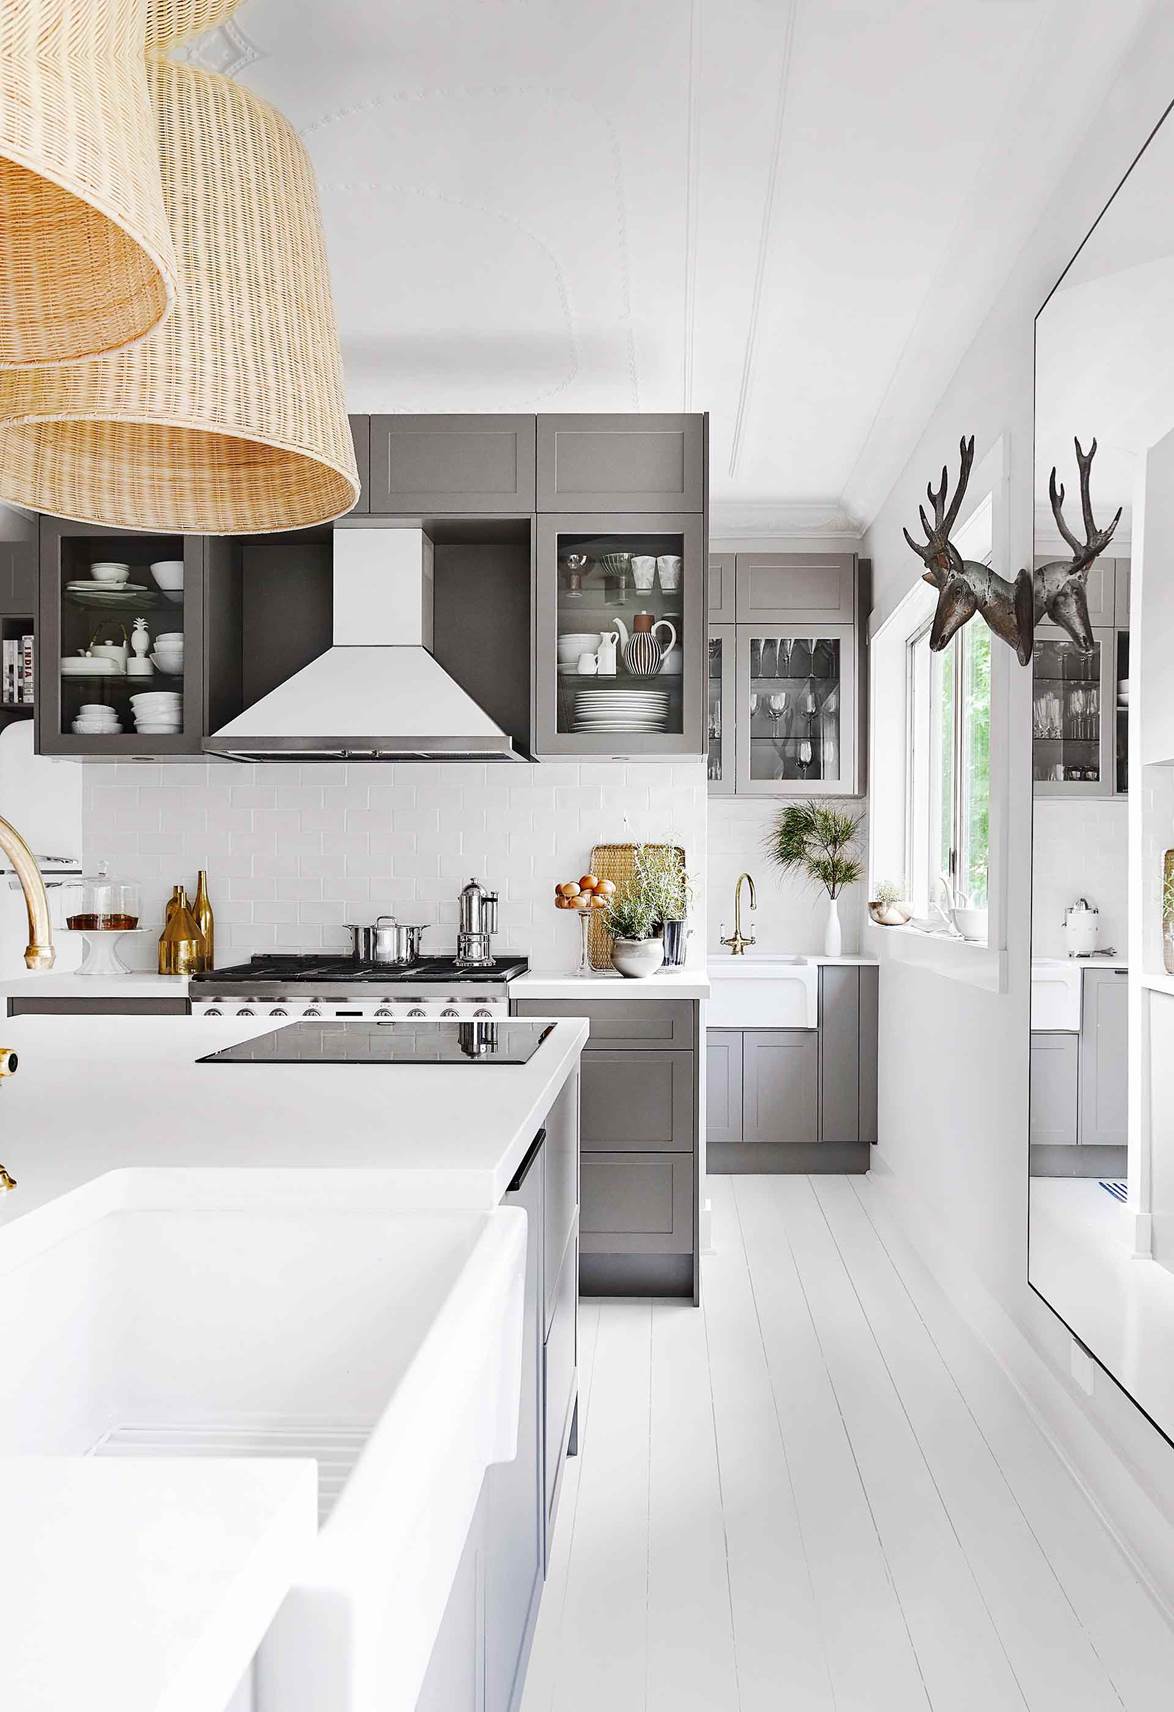 Tủ bếp shaker - lựa chọn thông minh, linh hoạt với mọi phong cách nhà bếp - Ảnh 3.